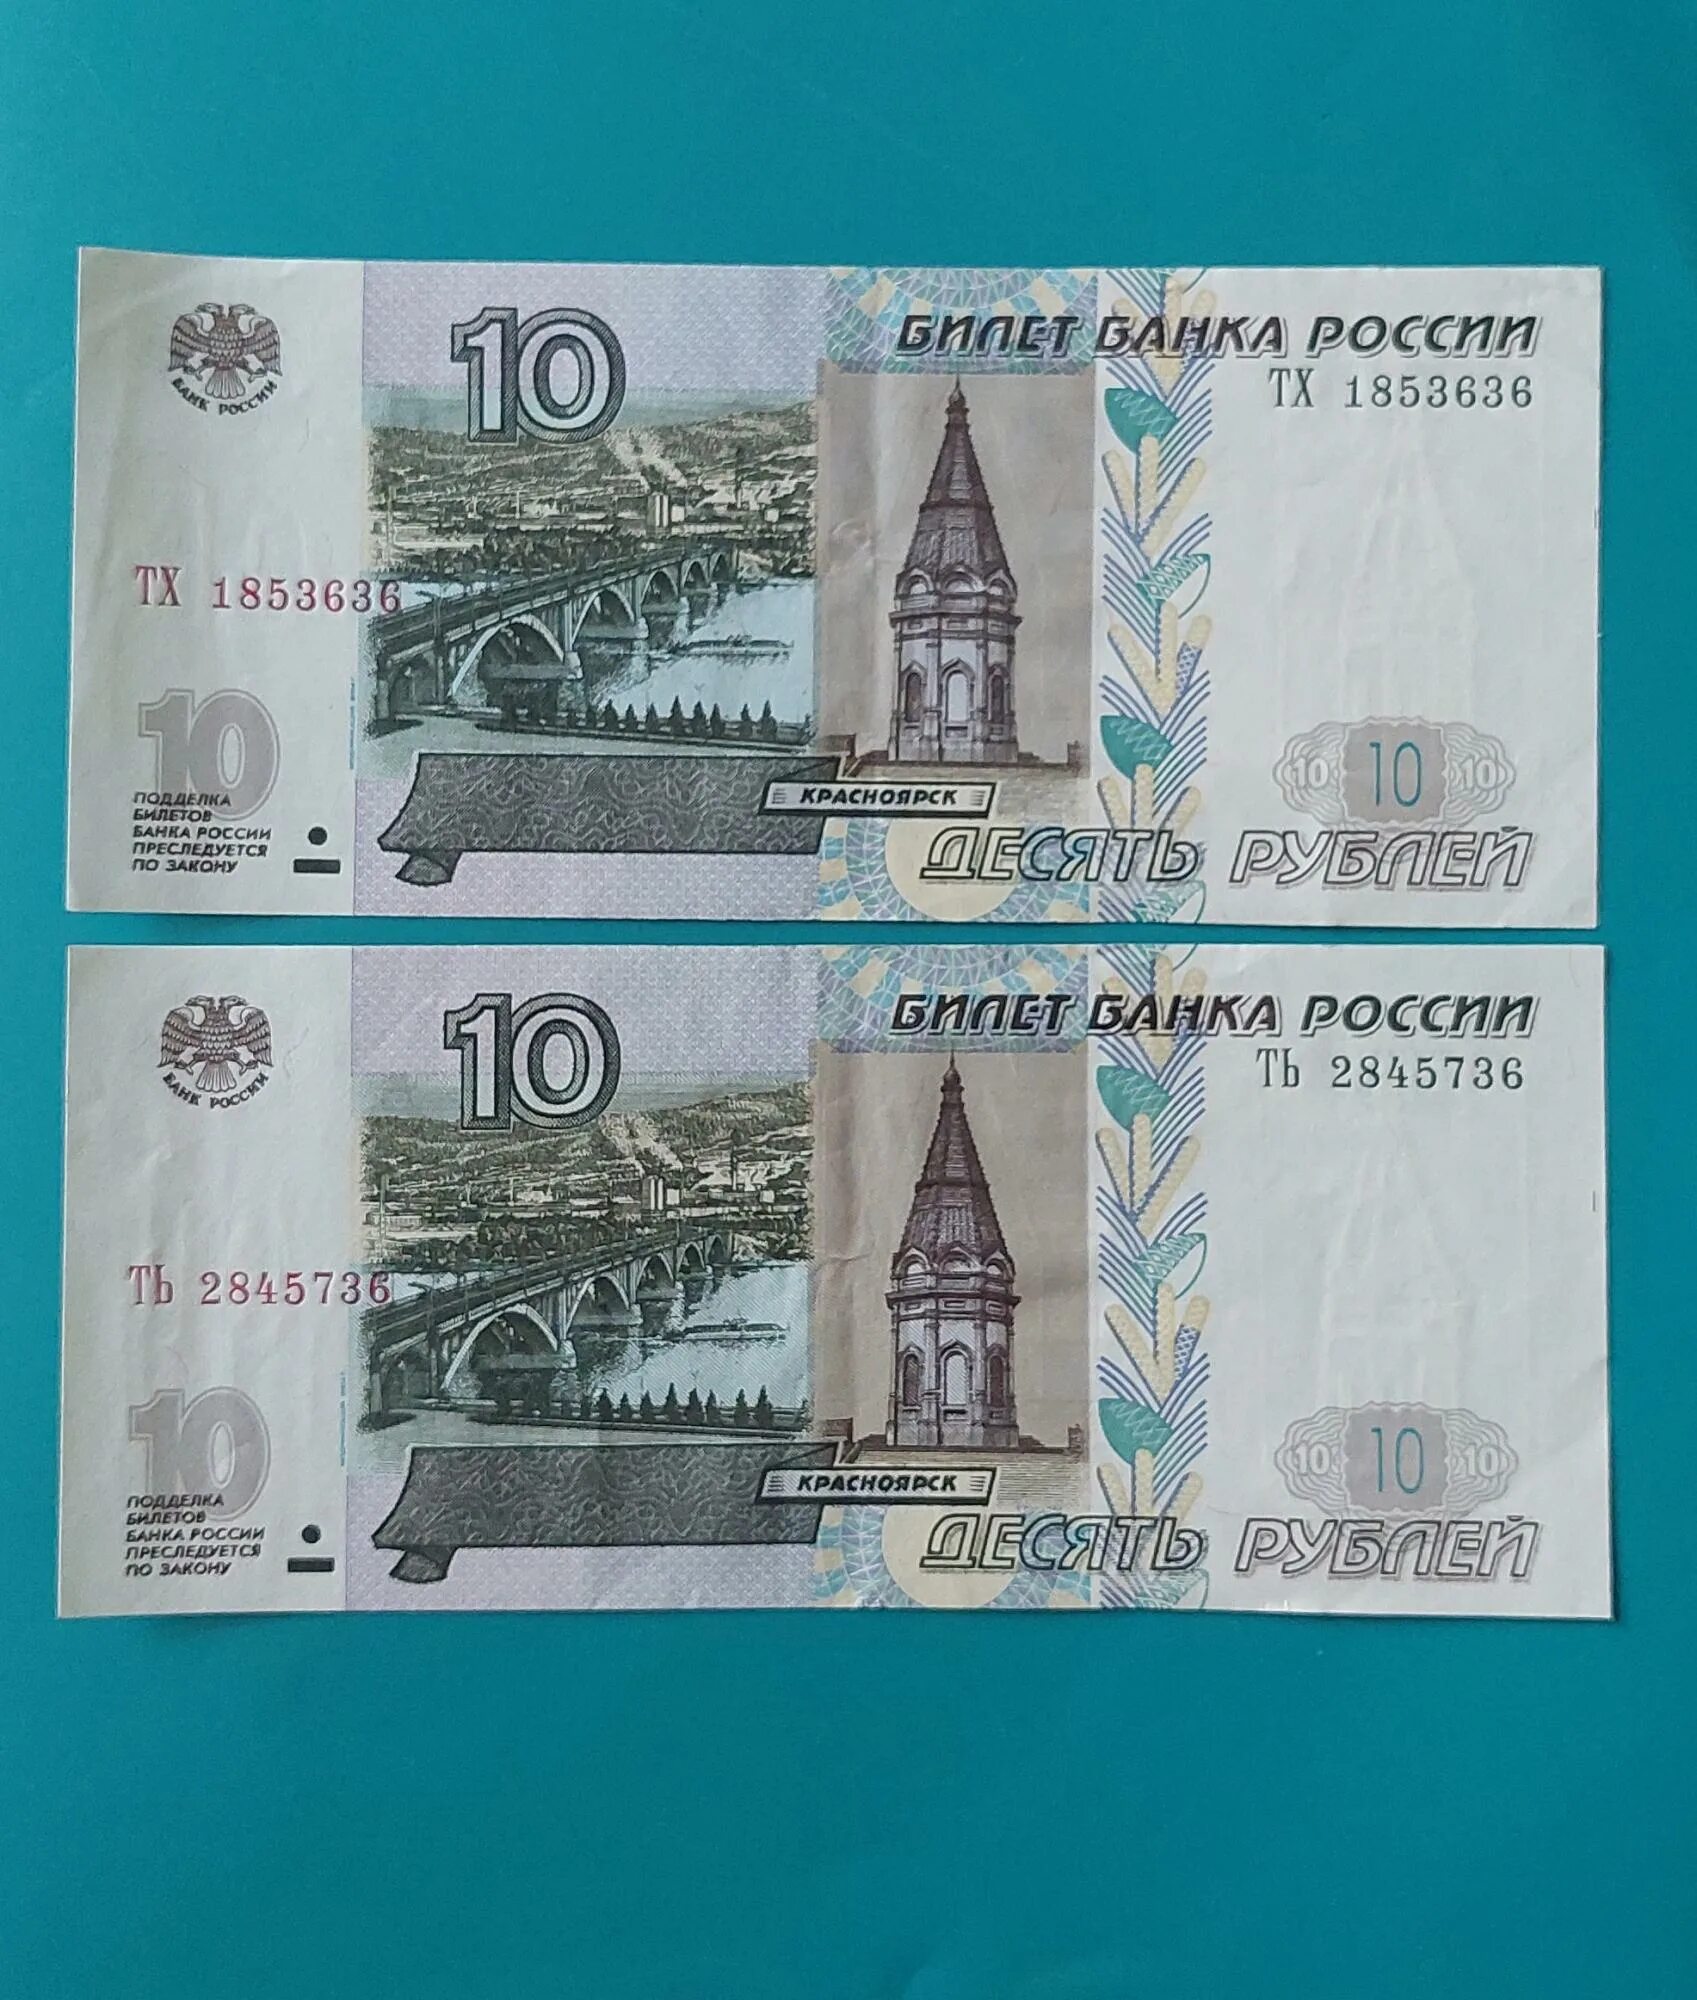 10 Рублей бумажные. 10 Рублей банкнота. Бумажная купюра 10 рублей 1997. Бумажная купюра 10 рублей 1997 года